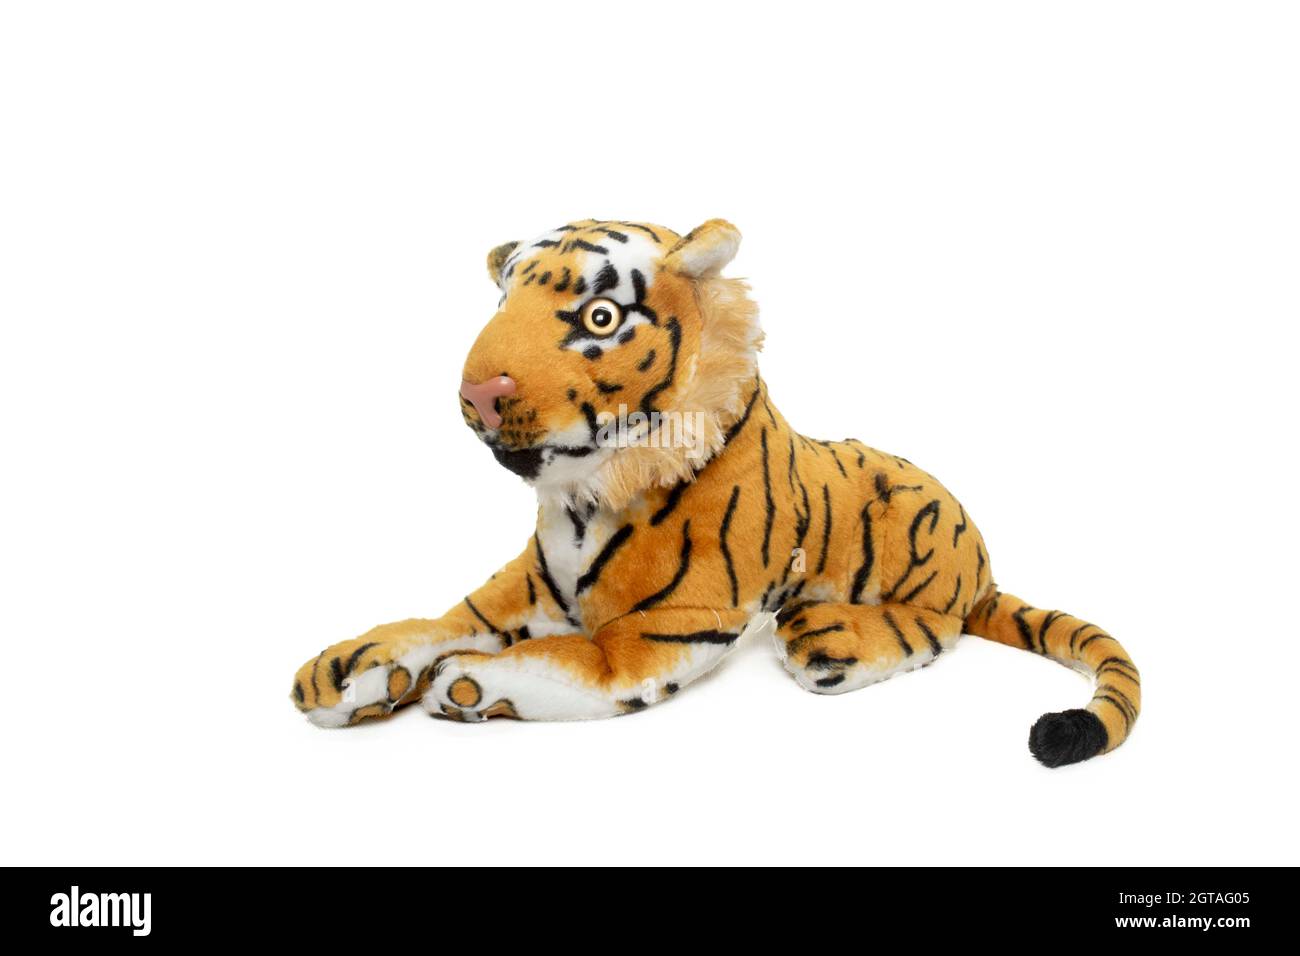 un tigre couché sur le sol avec un fond blanc Banque D'Images